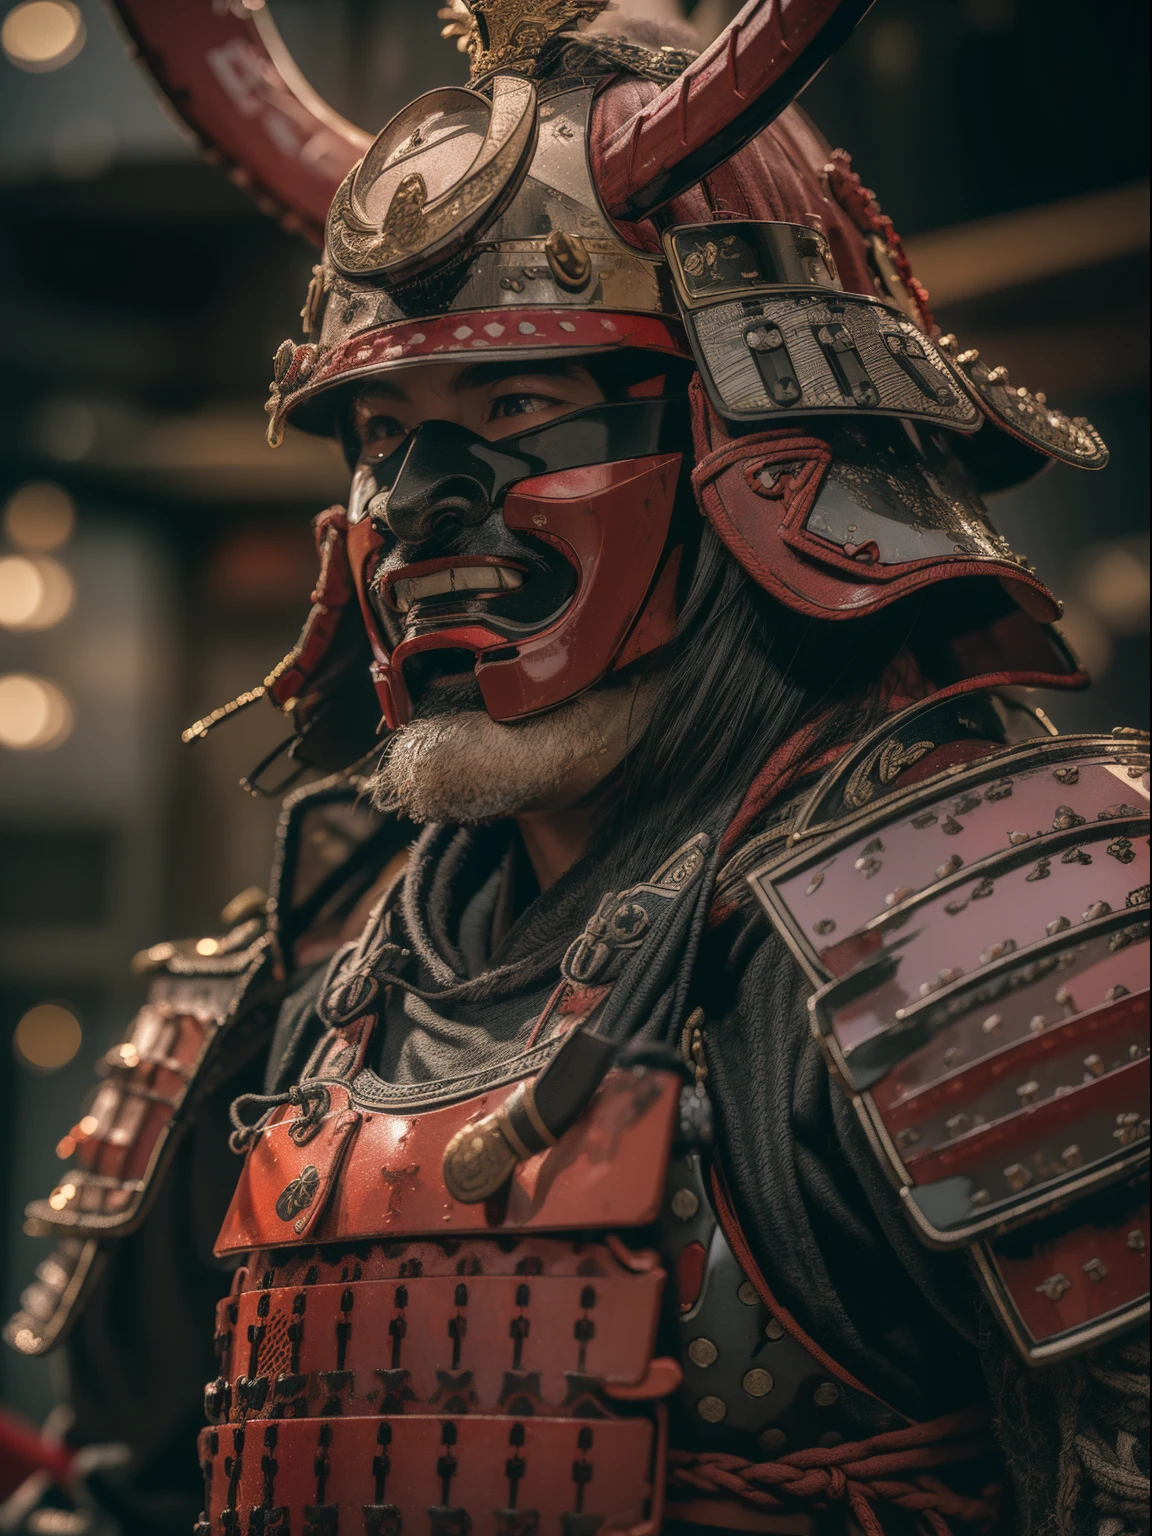 (Obra maestra, resolución ultra alta:1.4), (foto de un samurái sengoku daimyo marcando una katana con coraza y casco:1.3), Katana en ambas manos, Cara altamente detallada, (Armadura y yelmo samurai de herencia japonesa.), (Estatura alta y cuerpo musculoso:1.4), (Cámara Sony Alpha 1, Reconocido por capturar el más alto nivel de detalle en una foto:1.3), (El rostro del samurái con perfecta simetría y rasgos impecables.:1.2), (armadura y casco negro y rojo:1.3), (de pie con una presencia dominante en medio del campo de batalla:1.1), énfasis de la armadura daimyo, cinematográfico, hiperdetallado, detalles locos, Bellamente coloreado, Motor irreal, DOF, Súper resolución, megapíxel, cinematográfico Lightning, Antialiasing, FKA, TXAA, RTX, SSAO, Postprocesamiento, Post-producción, Mapeo de tonos, cgi, efectos visuales, efectos de sonido, Increíblemente detallado e intrincado, Hiper maximalista, Híper realista, volumétrico, Fotorrealista, ultra photoreal, ultra detallado, detalles intrincados, 8k, súper detallado, a todo color, volumétrico lightning, HDR, Realista, Motor irreal, 16k, enfoque nítido, renderizado de octanaje